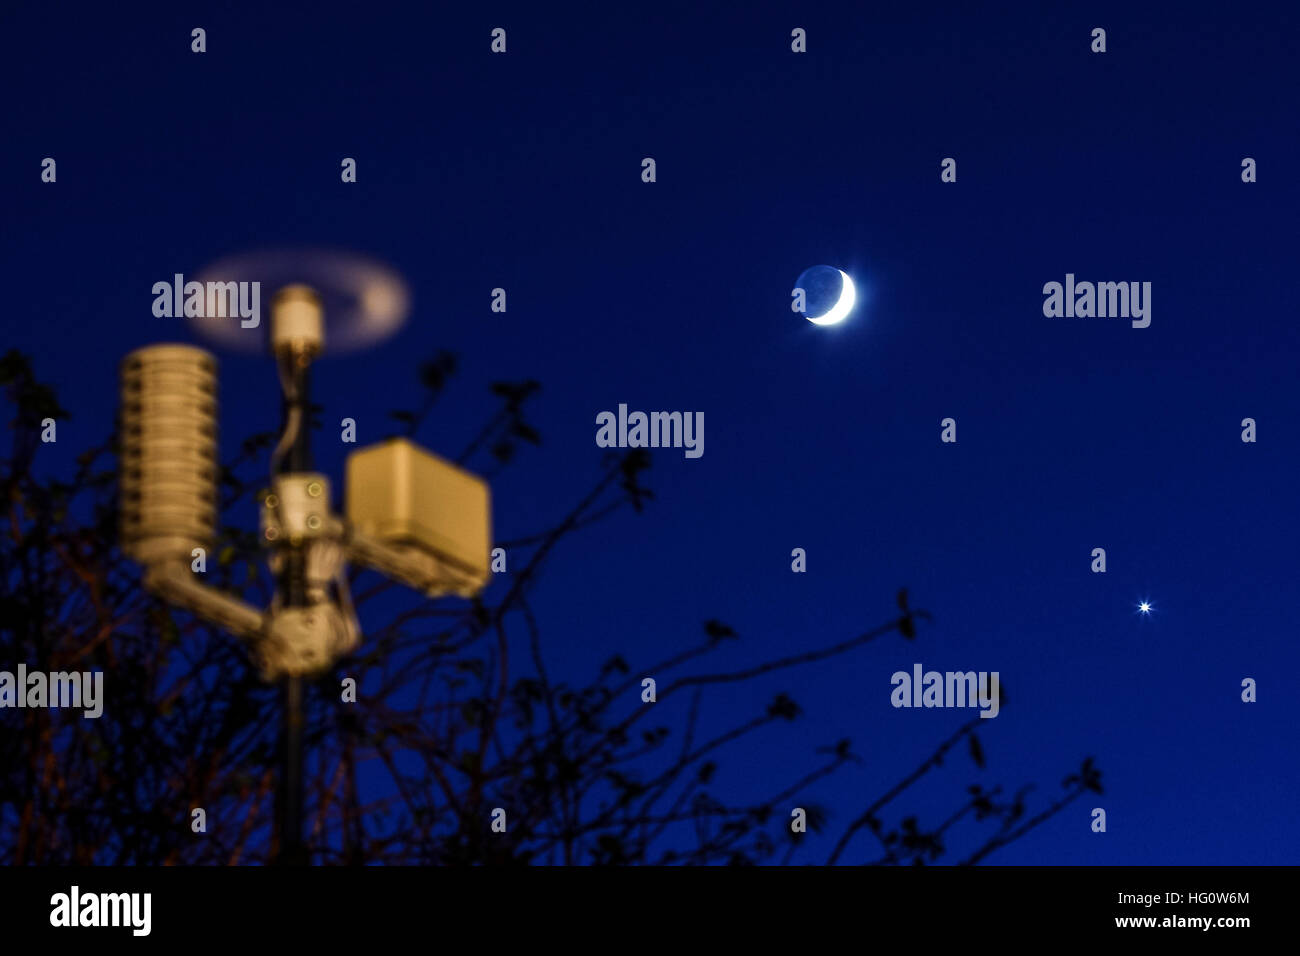 Leeds, West Yorkshire, Reino Unido. 2 ene, 2017. Cuatro días de edad Luna encerando en conjunción con el planeta Venus en la constelación de Acuario la luna está actualmente en una magnitud de -10,7 y Venus en una magnitud de -5,0. Adoptado el 2 de enero de 2017 en Leeds, West Yorkshire. © Andrew Gardner/Alamy Live News Foto de stock